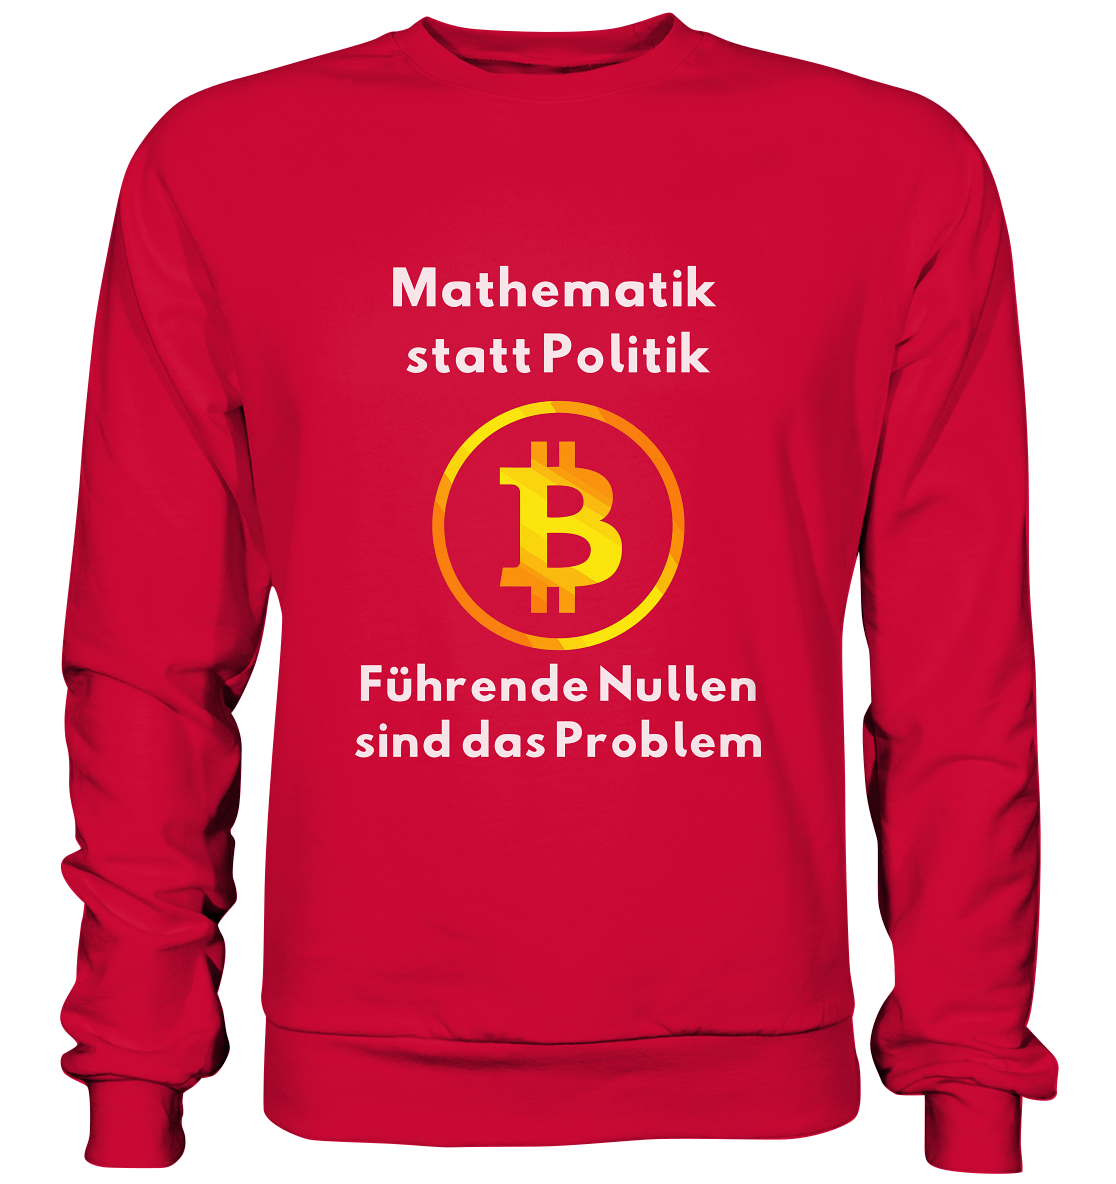 Mathematik statt Politik - führende Nullen sind (überall) das Problem ;-) - Basic Sweatshirt